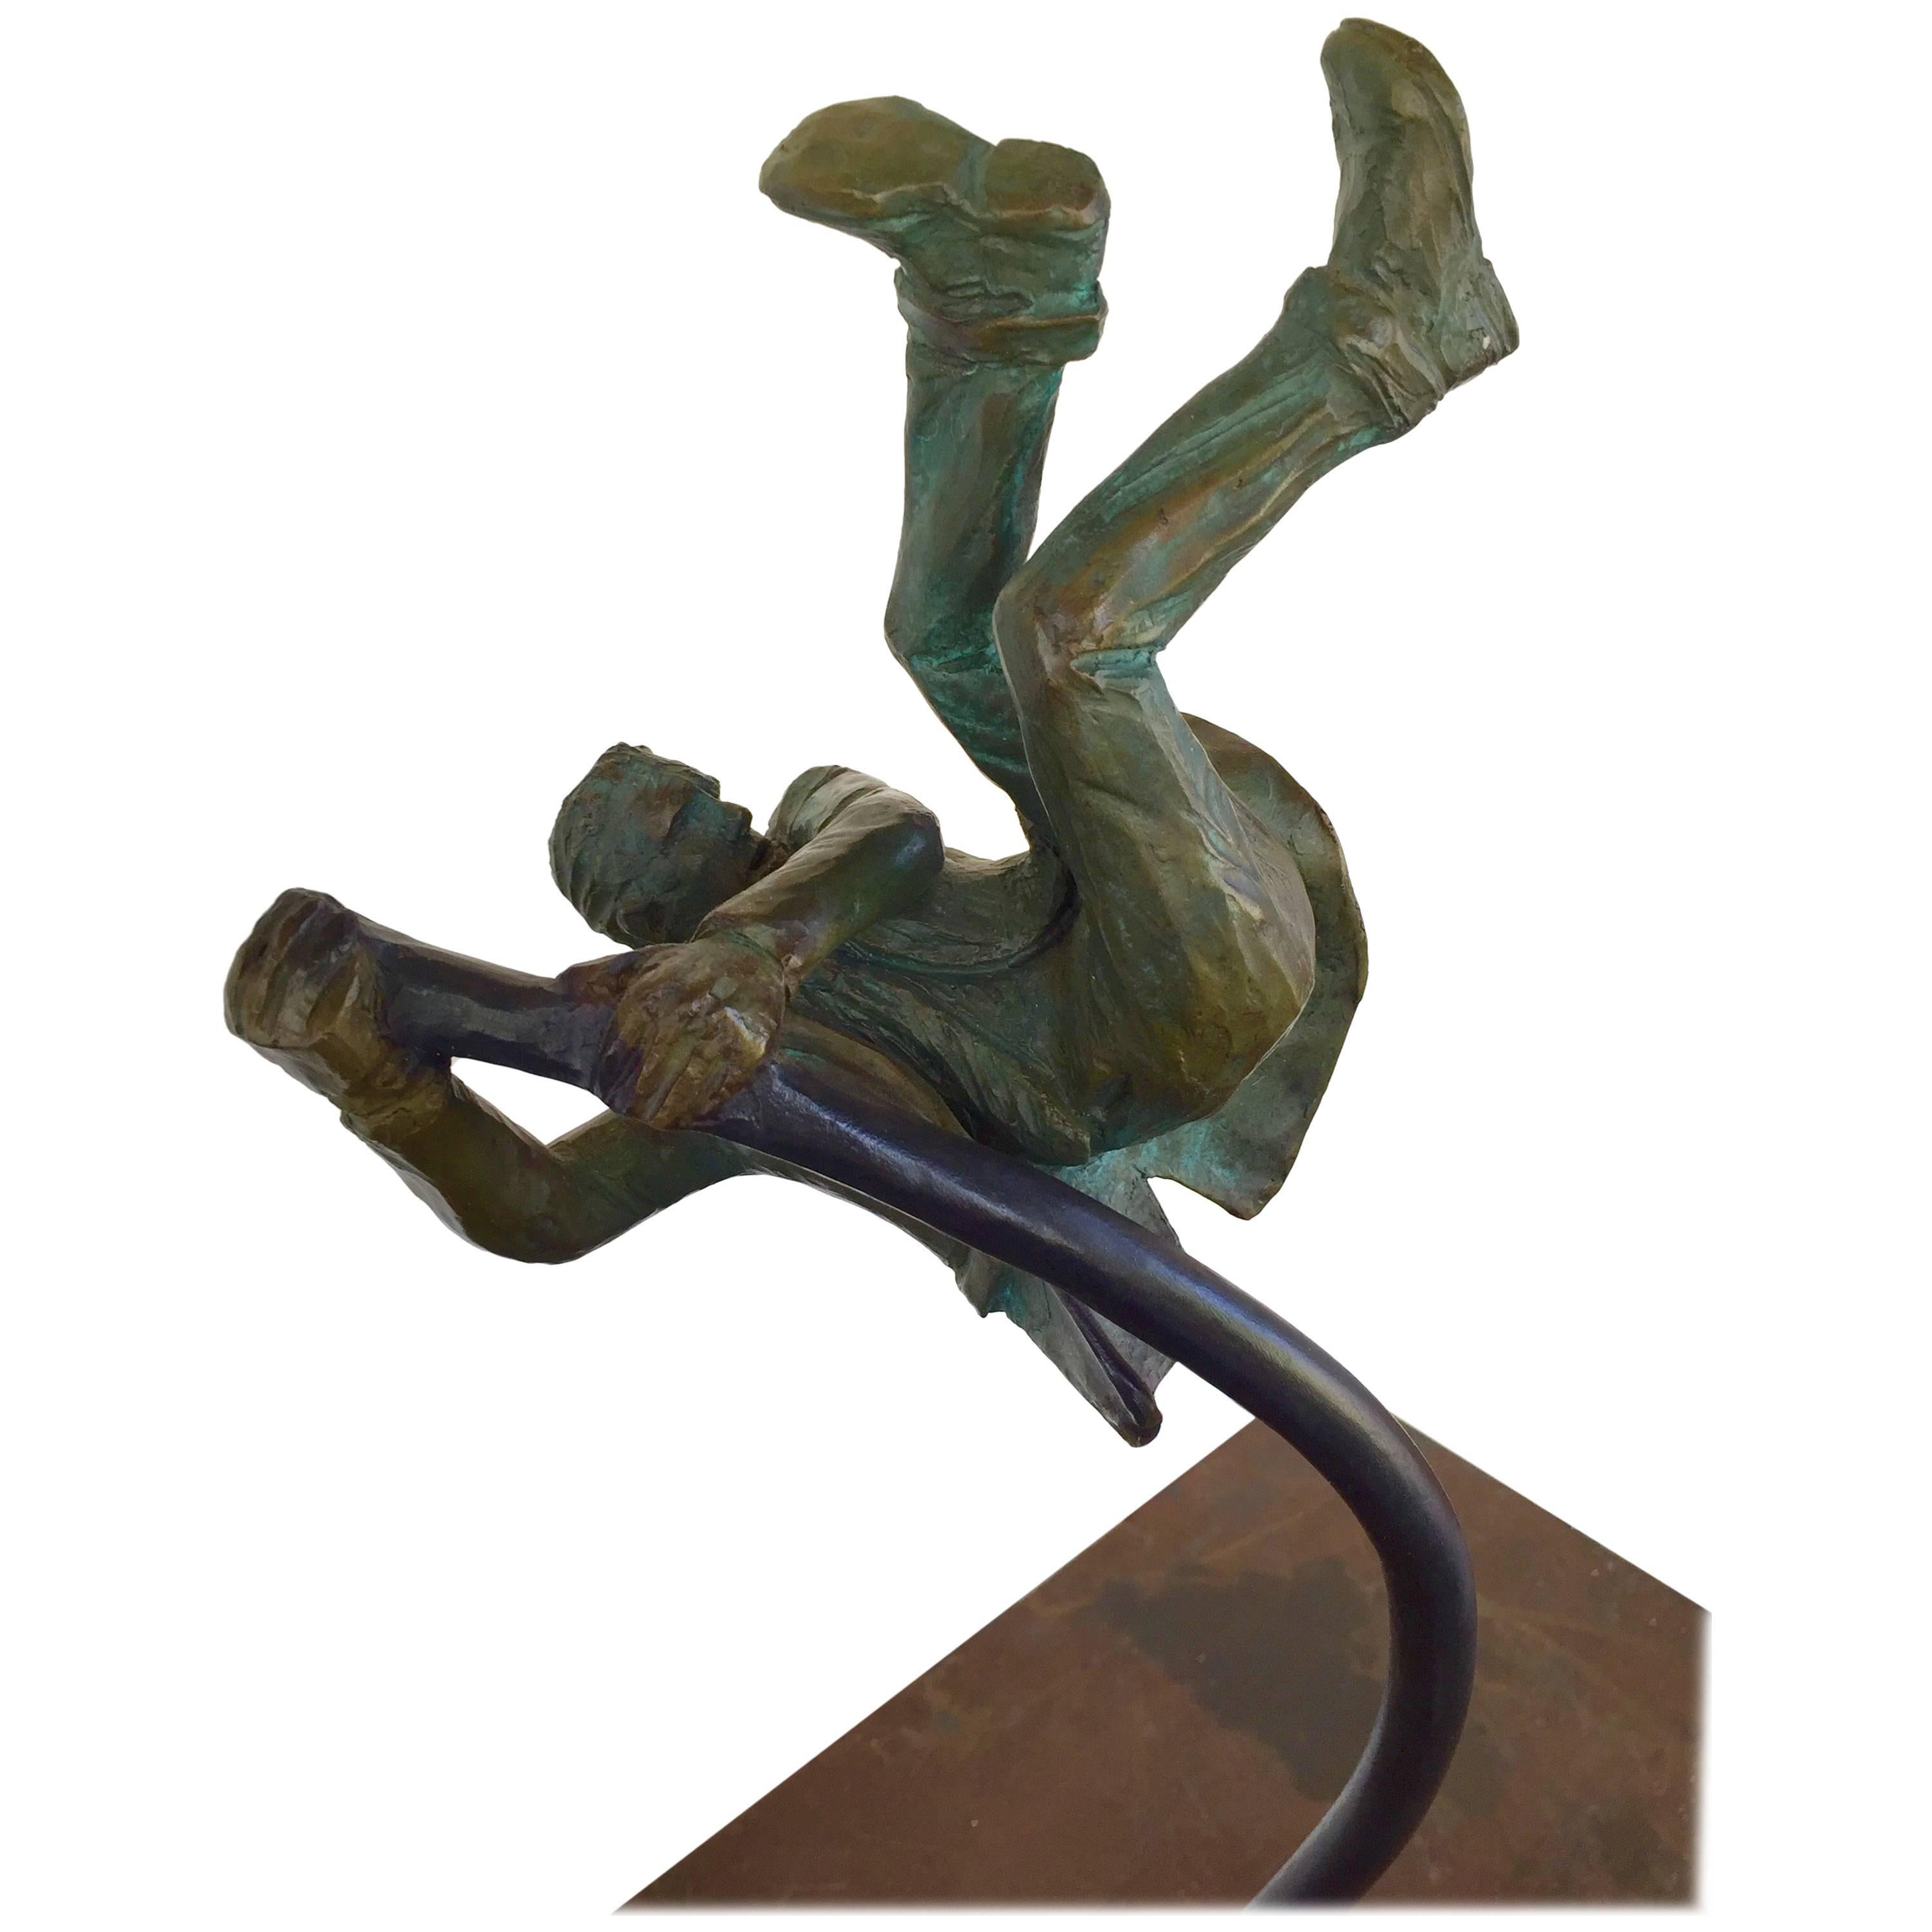 "Leverage" by Bronze Sculptor Jim Rennert